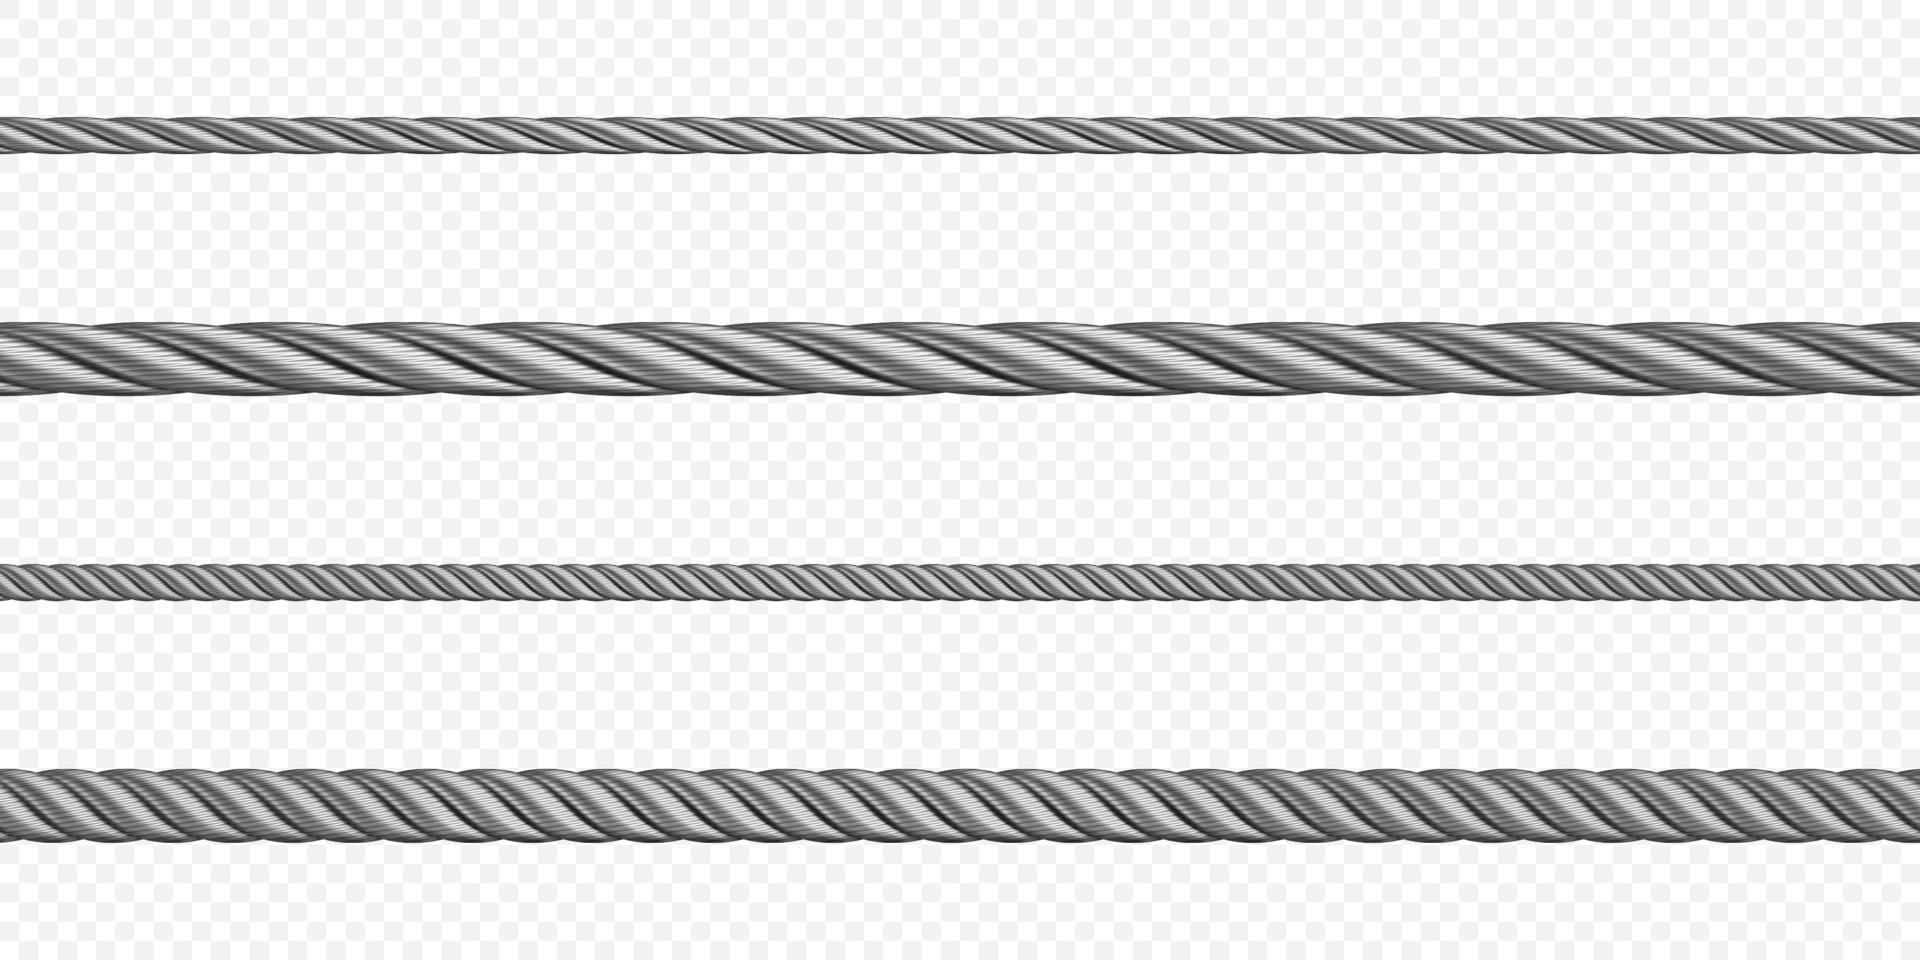 metaal tros, touw, staal koord van verschillend maten vector